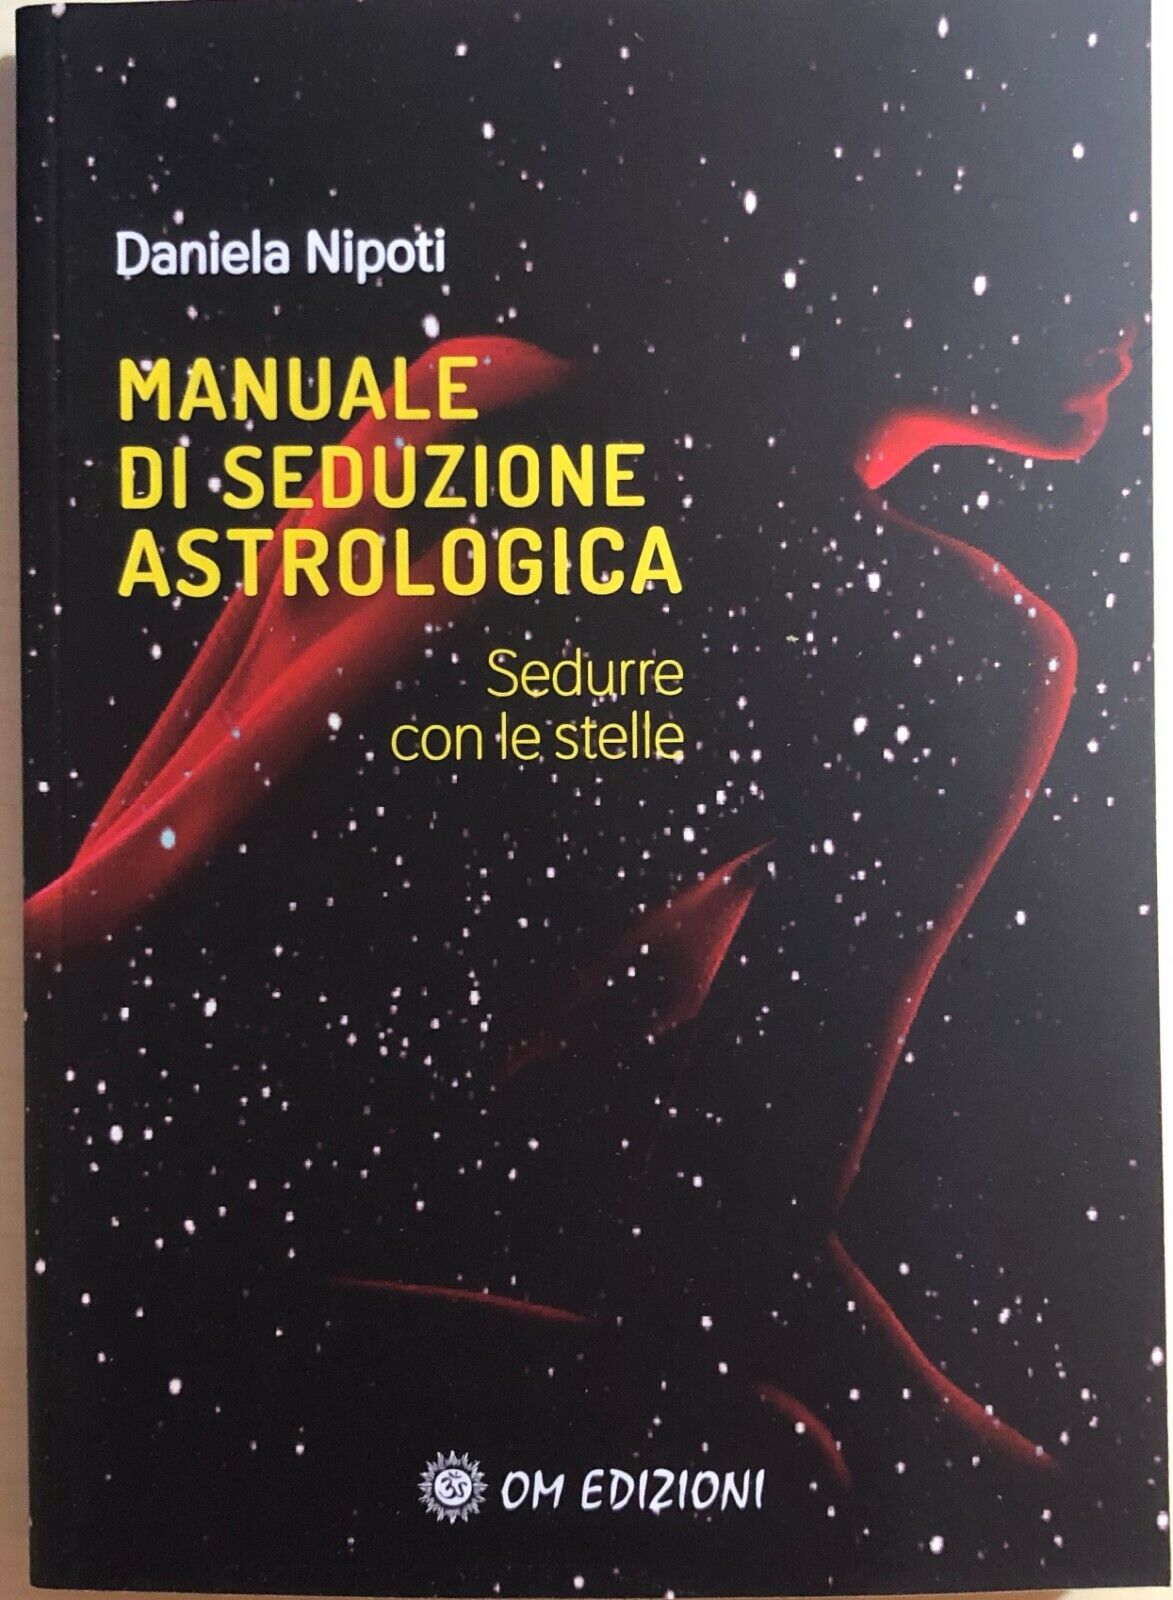 Manuale di seduzione astrologica di Daniela Nipoti, 2020, OM Edizioni